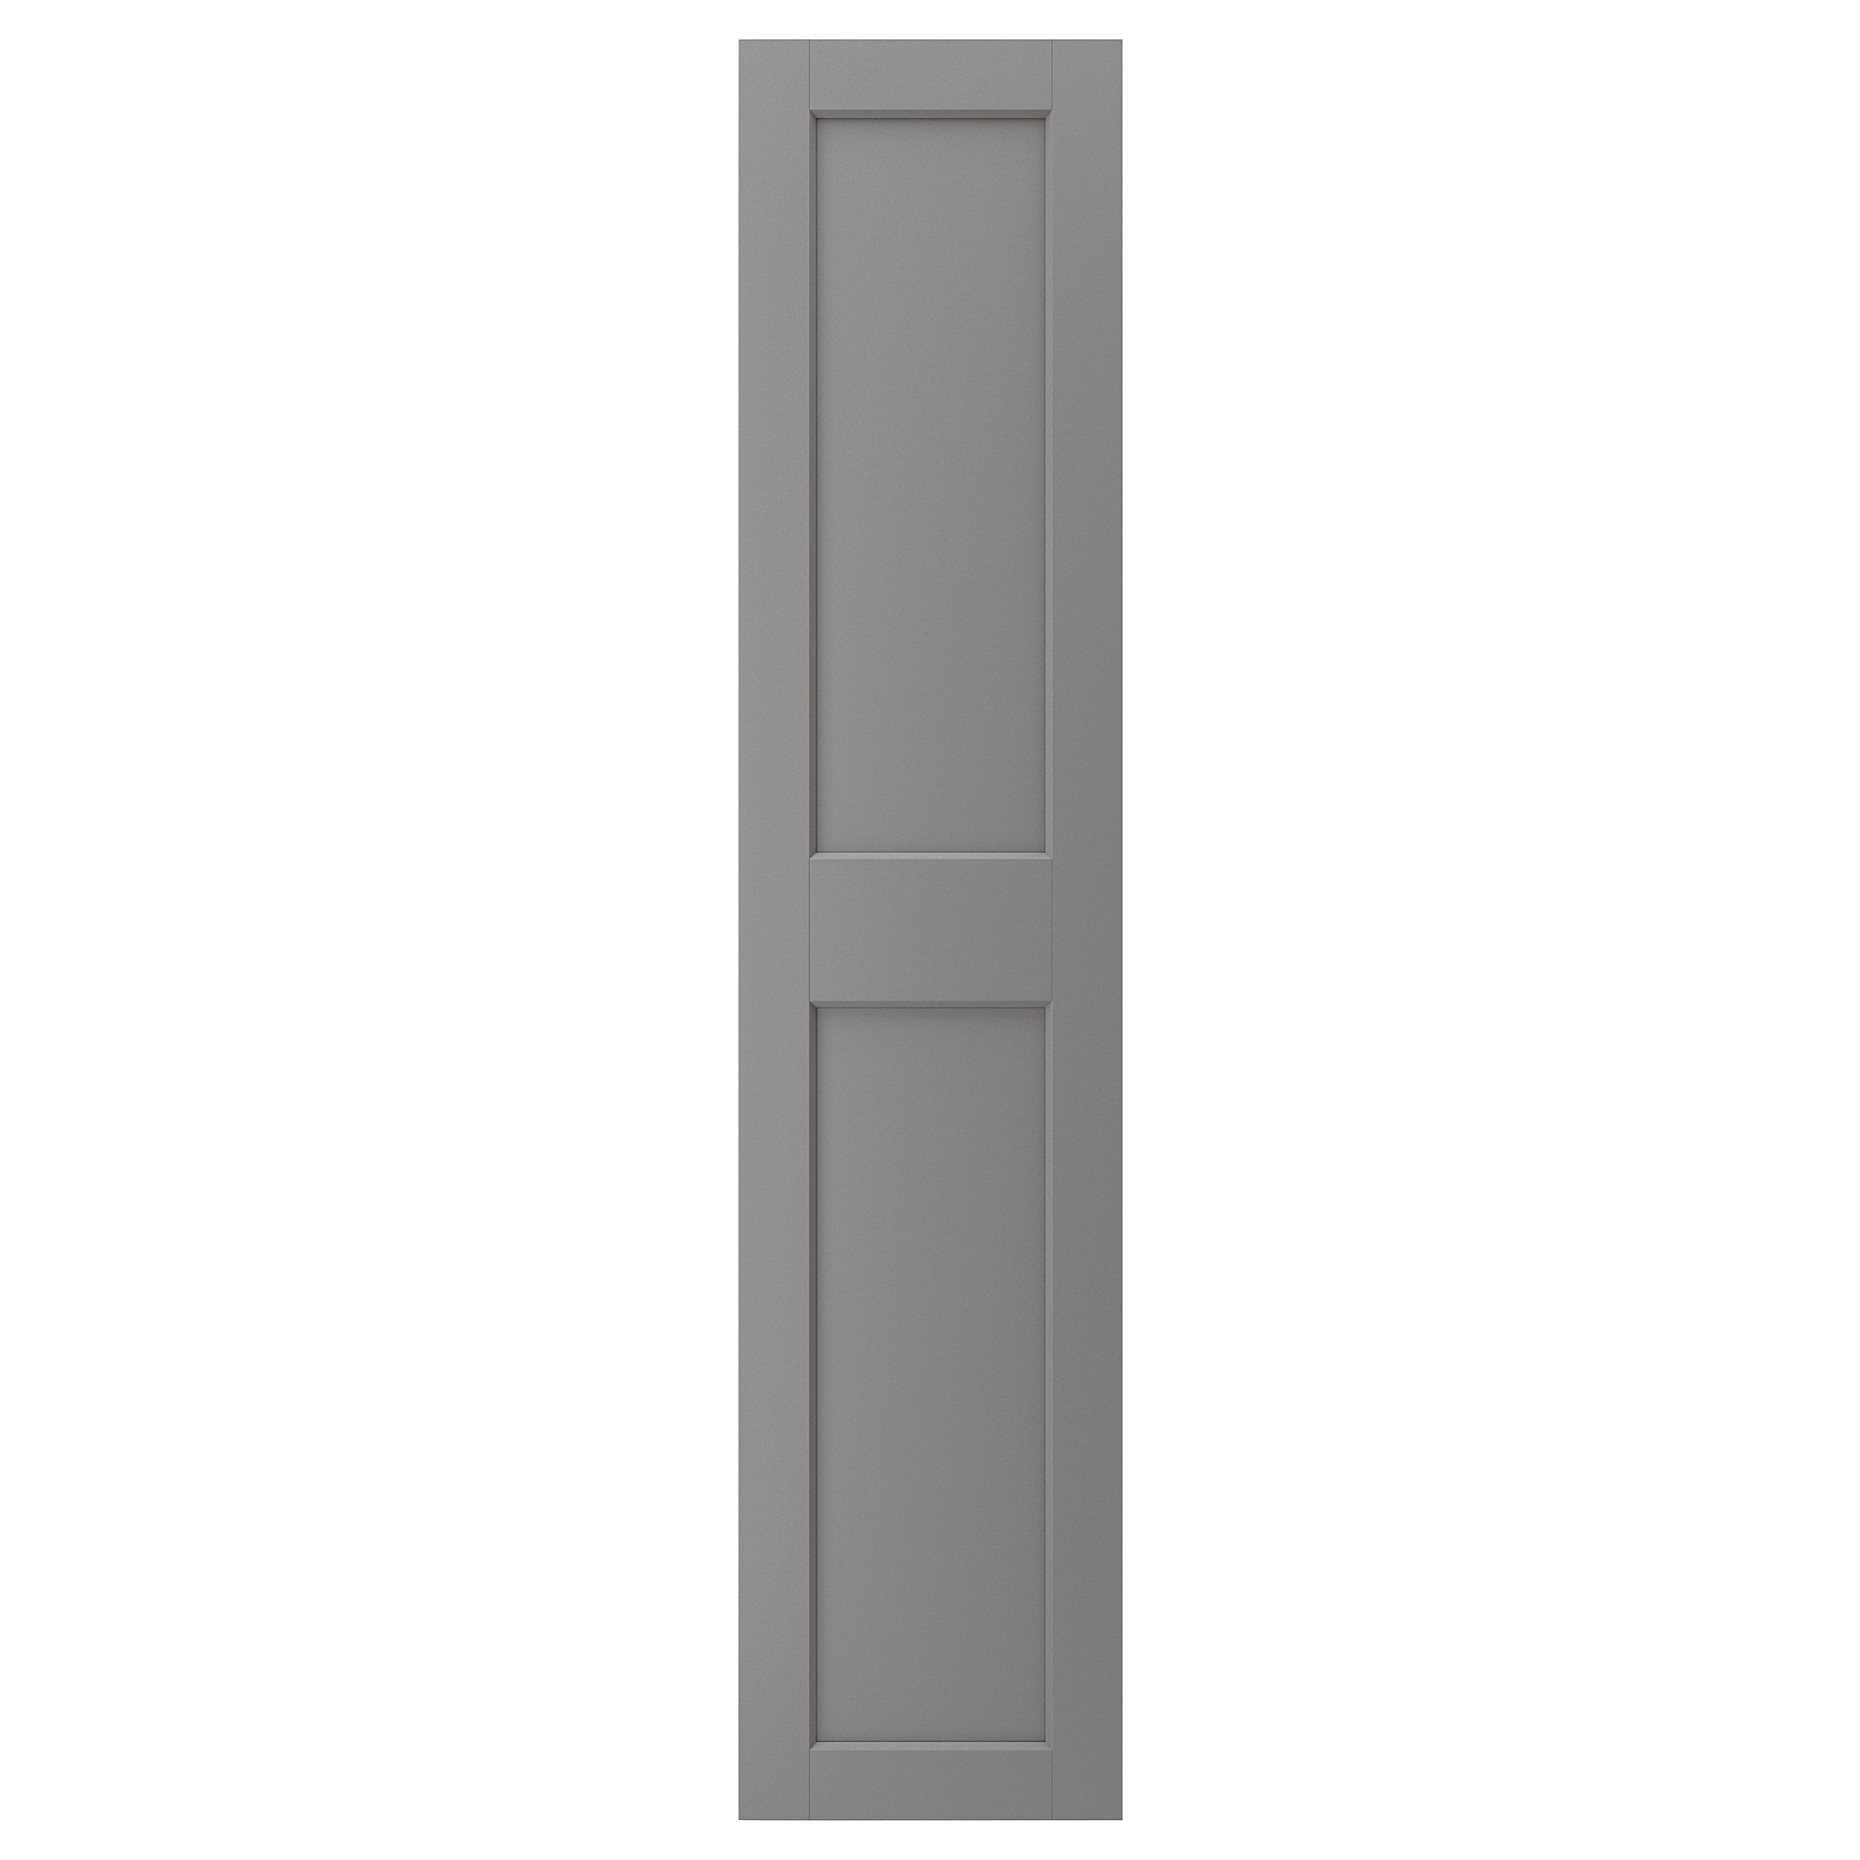 GRIMO, door with hinges, 50x229 cm, 193.321.94